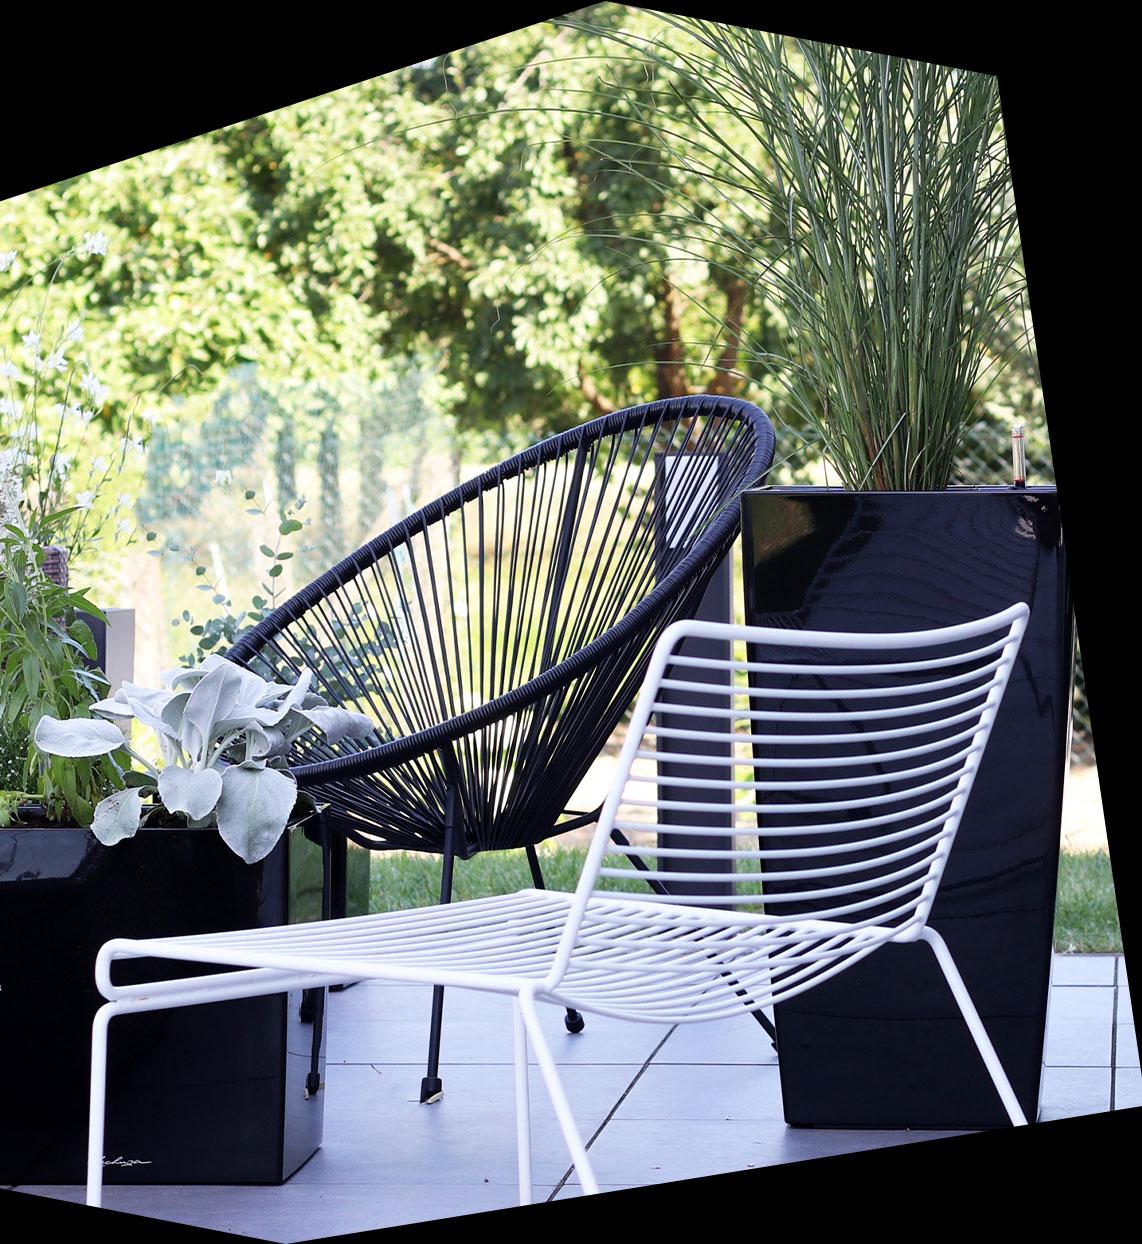 Jardinera negra de alto brillo CUBICO y CUBE en una terraza con muebles de acero tubular en blanco y negro